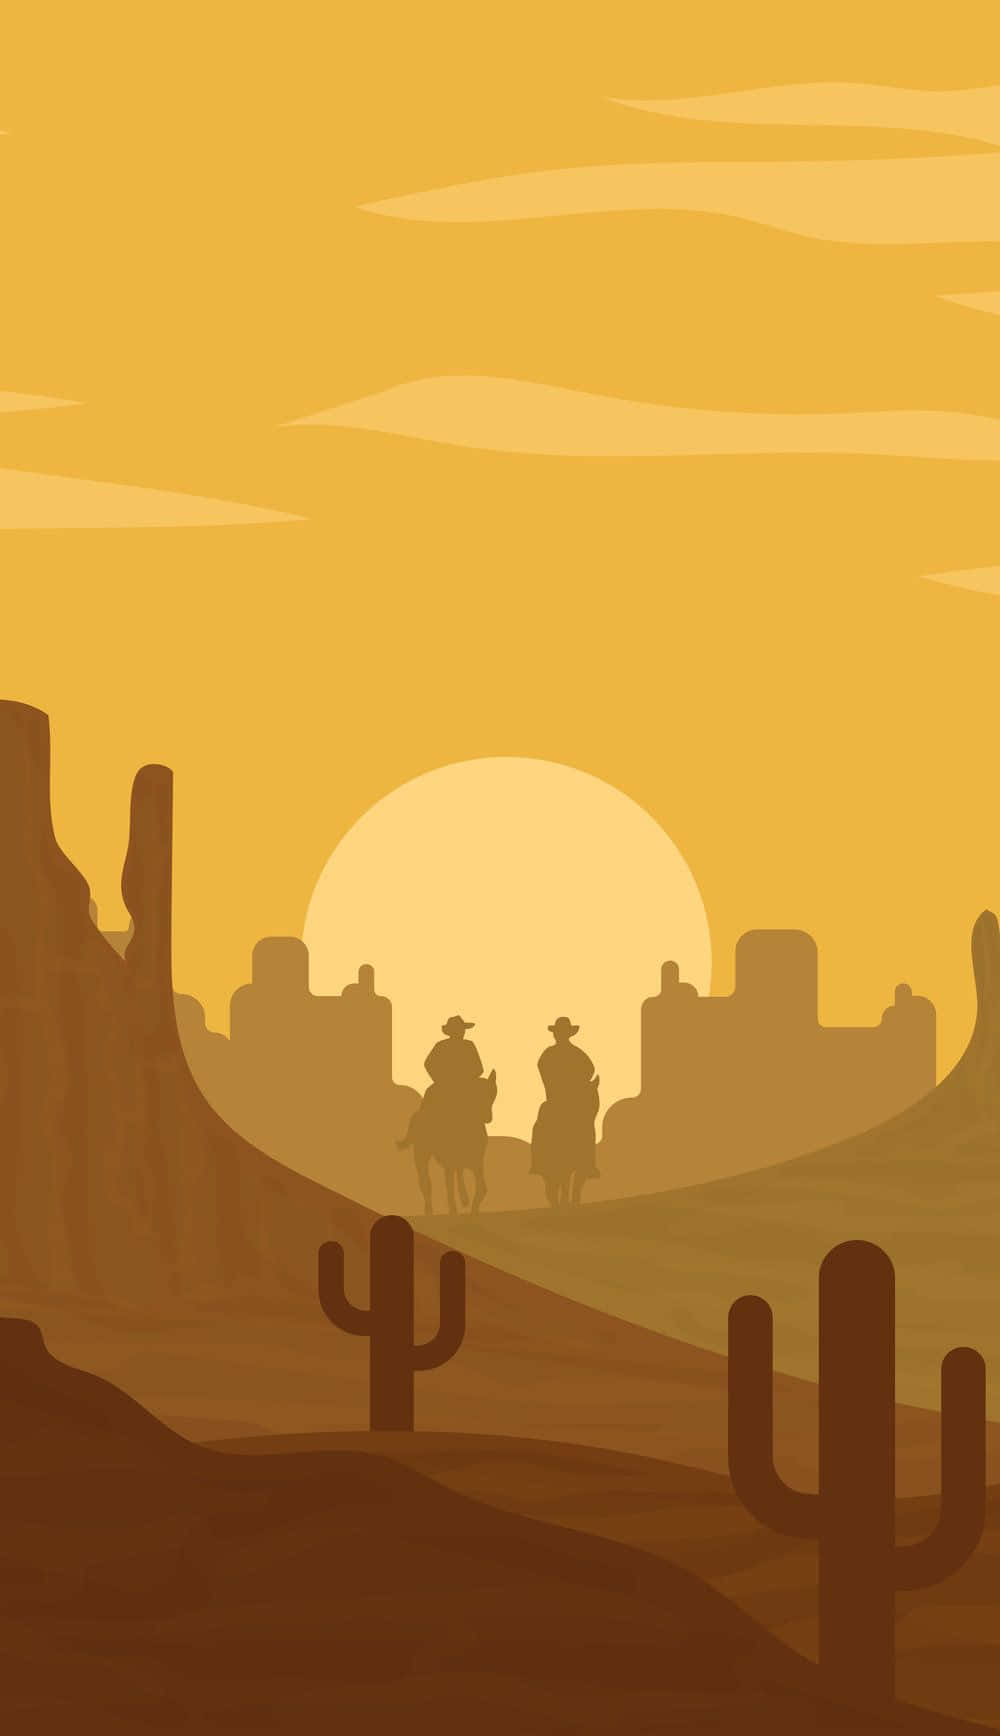 Zweicowboys Reiten Auf Pferden In Der Wüste. Wallpaper